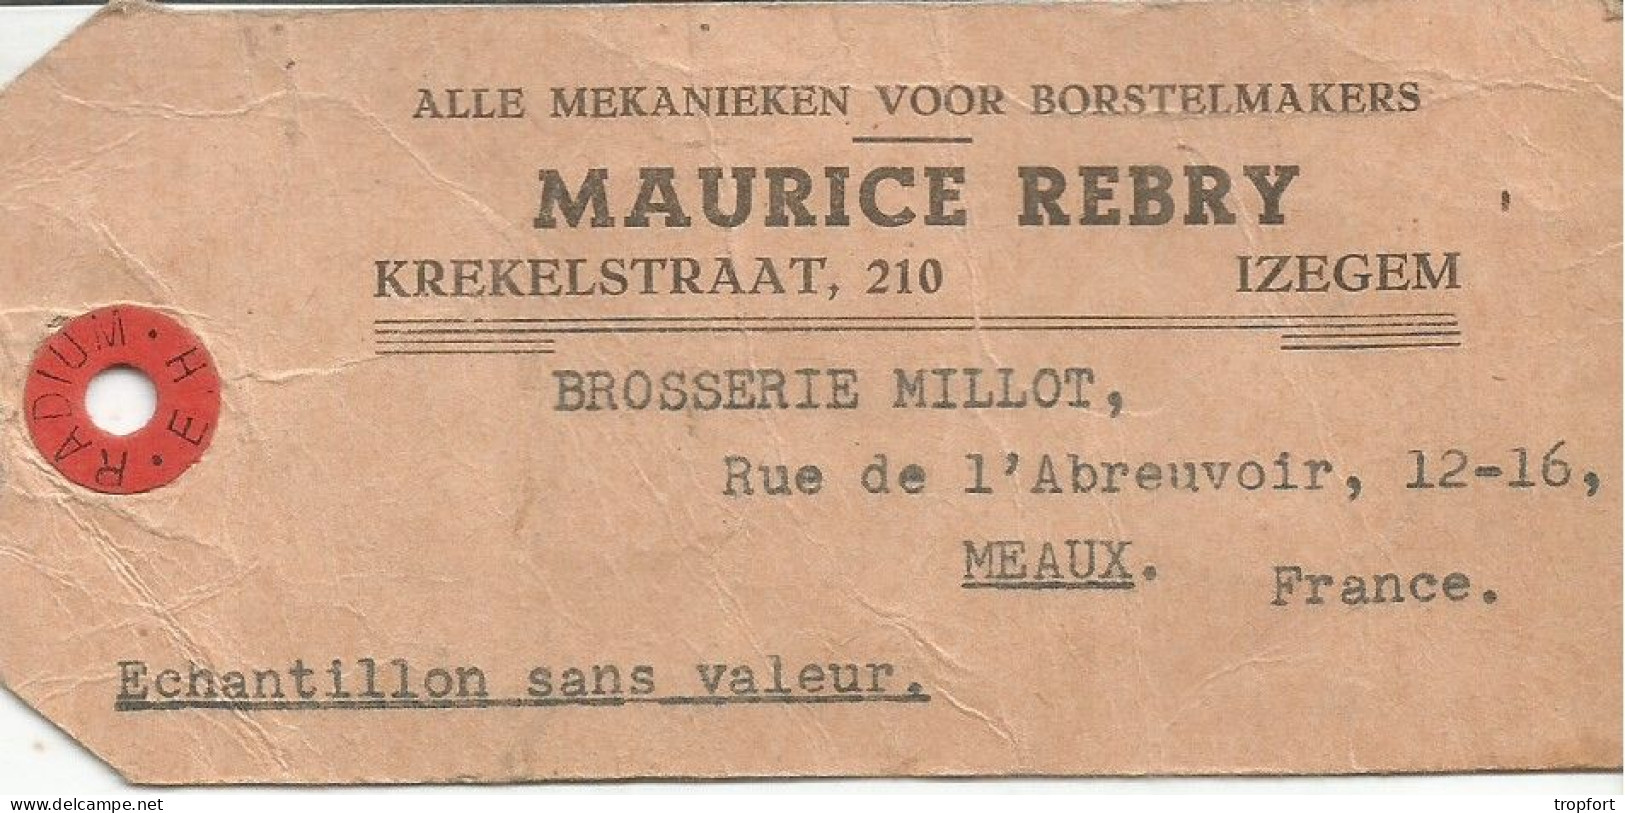 Ticket ETIQUETTE  POSTAL TIMBRE Maurice REBRY IZEGEM   BELGIQUE  MEAUX - Advertising